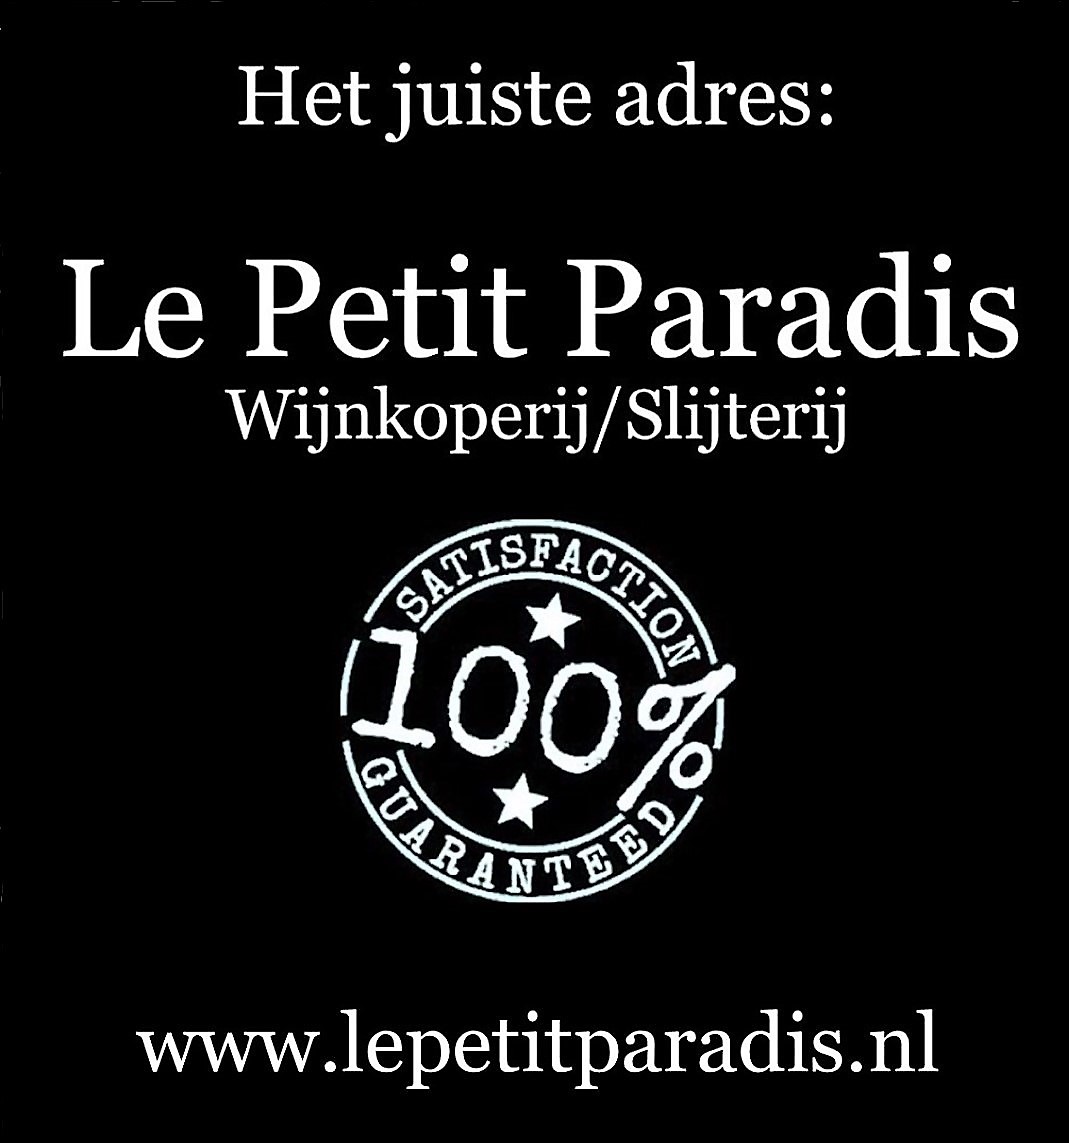 Le Petit Paradis Wijnkoperij/Slijterij